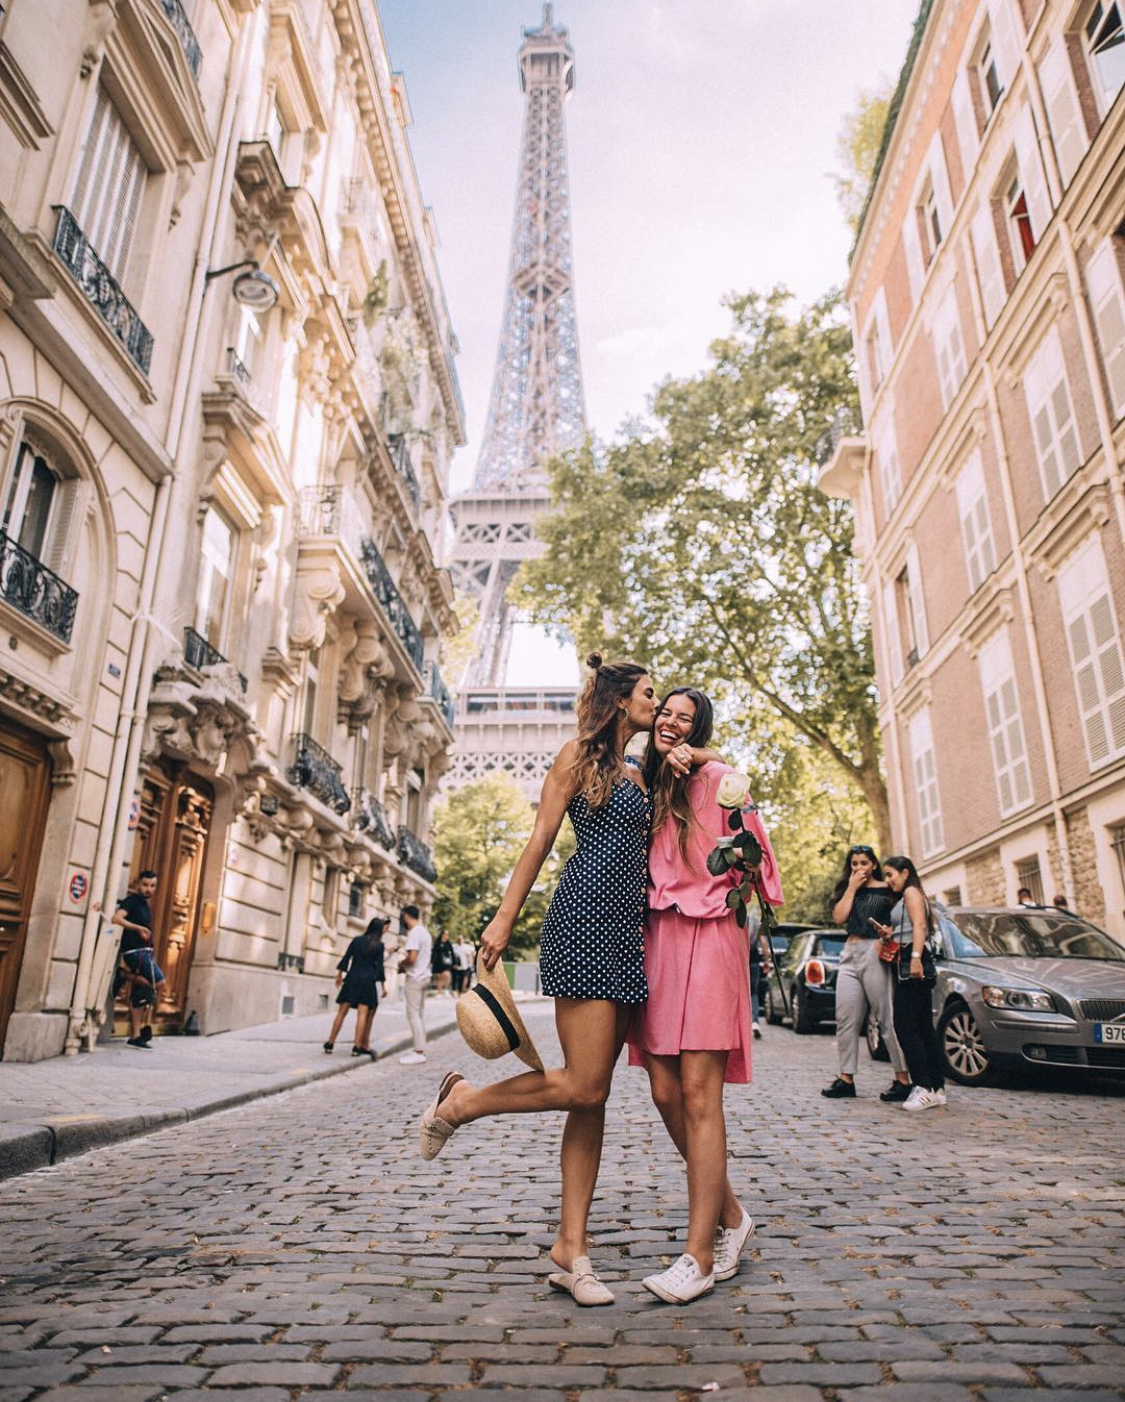 Lisa Homsy and Mel Vandersluis in Paris at the Eiffel Tower